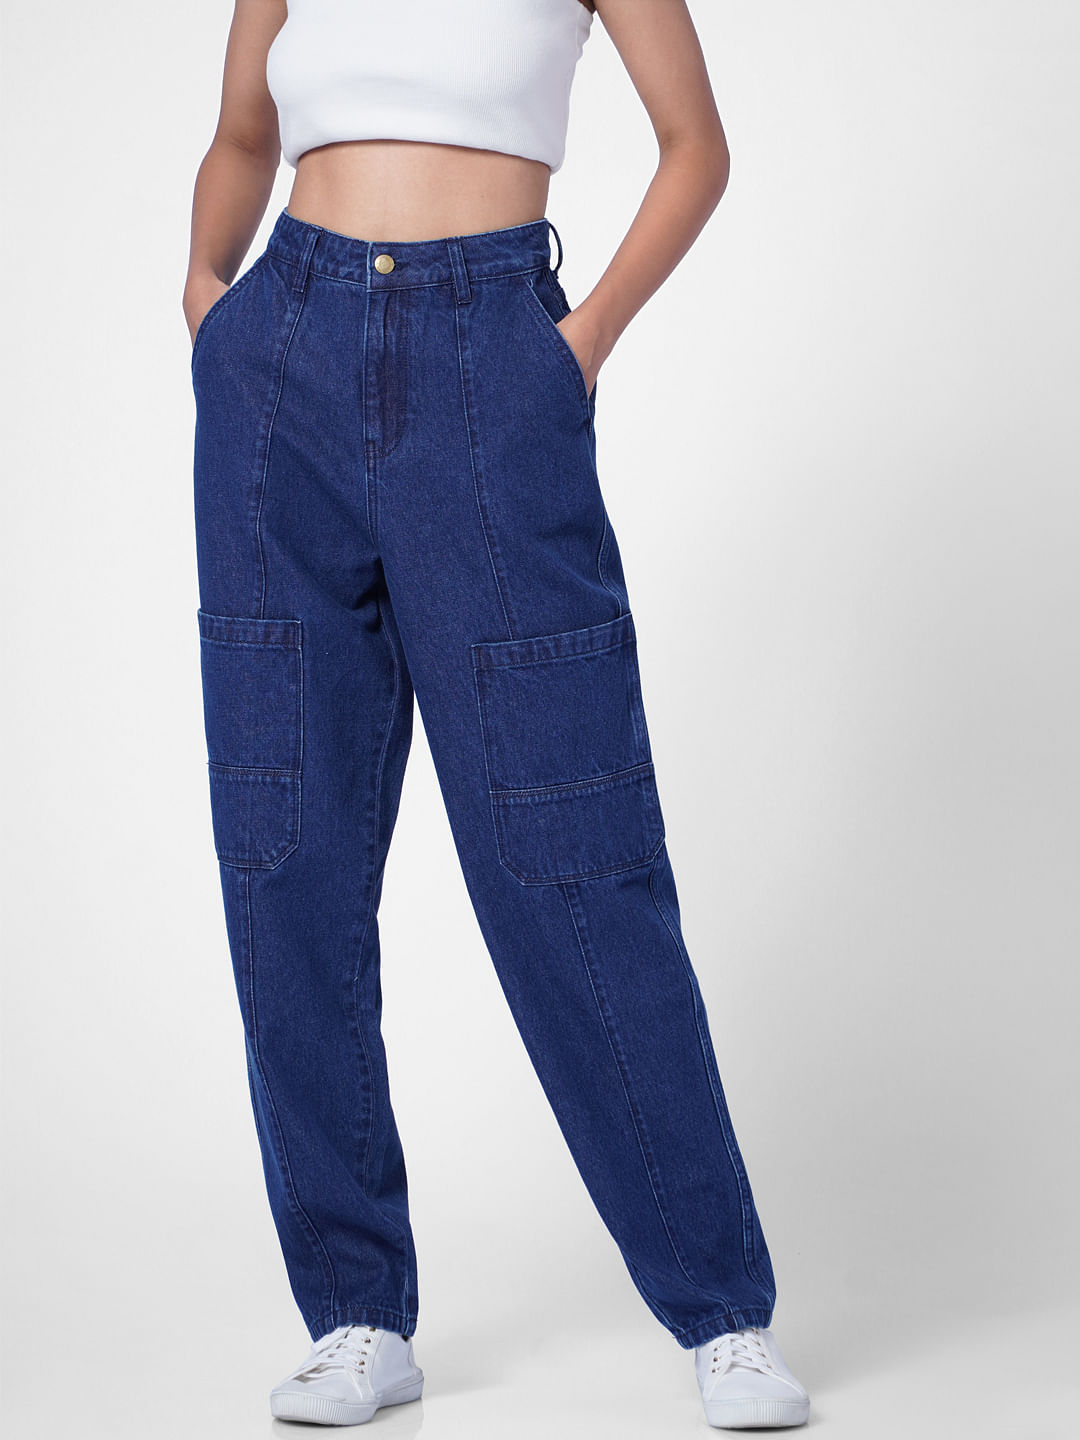 Helley Blue Denim Cargo Pants - ShopperBoard